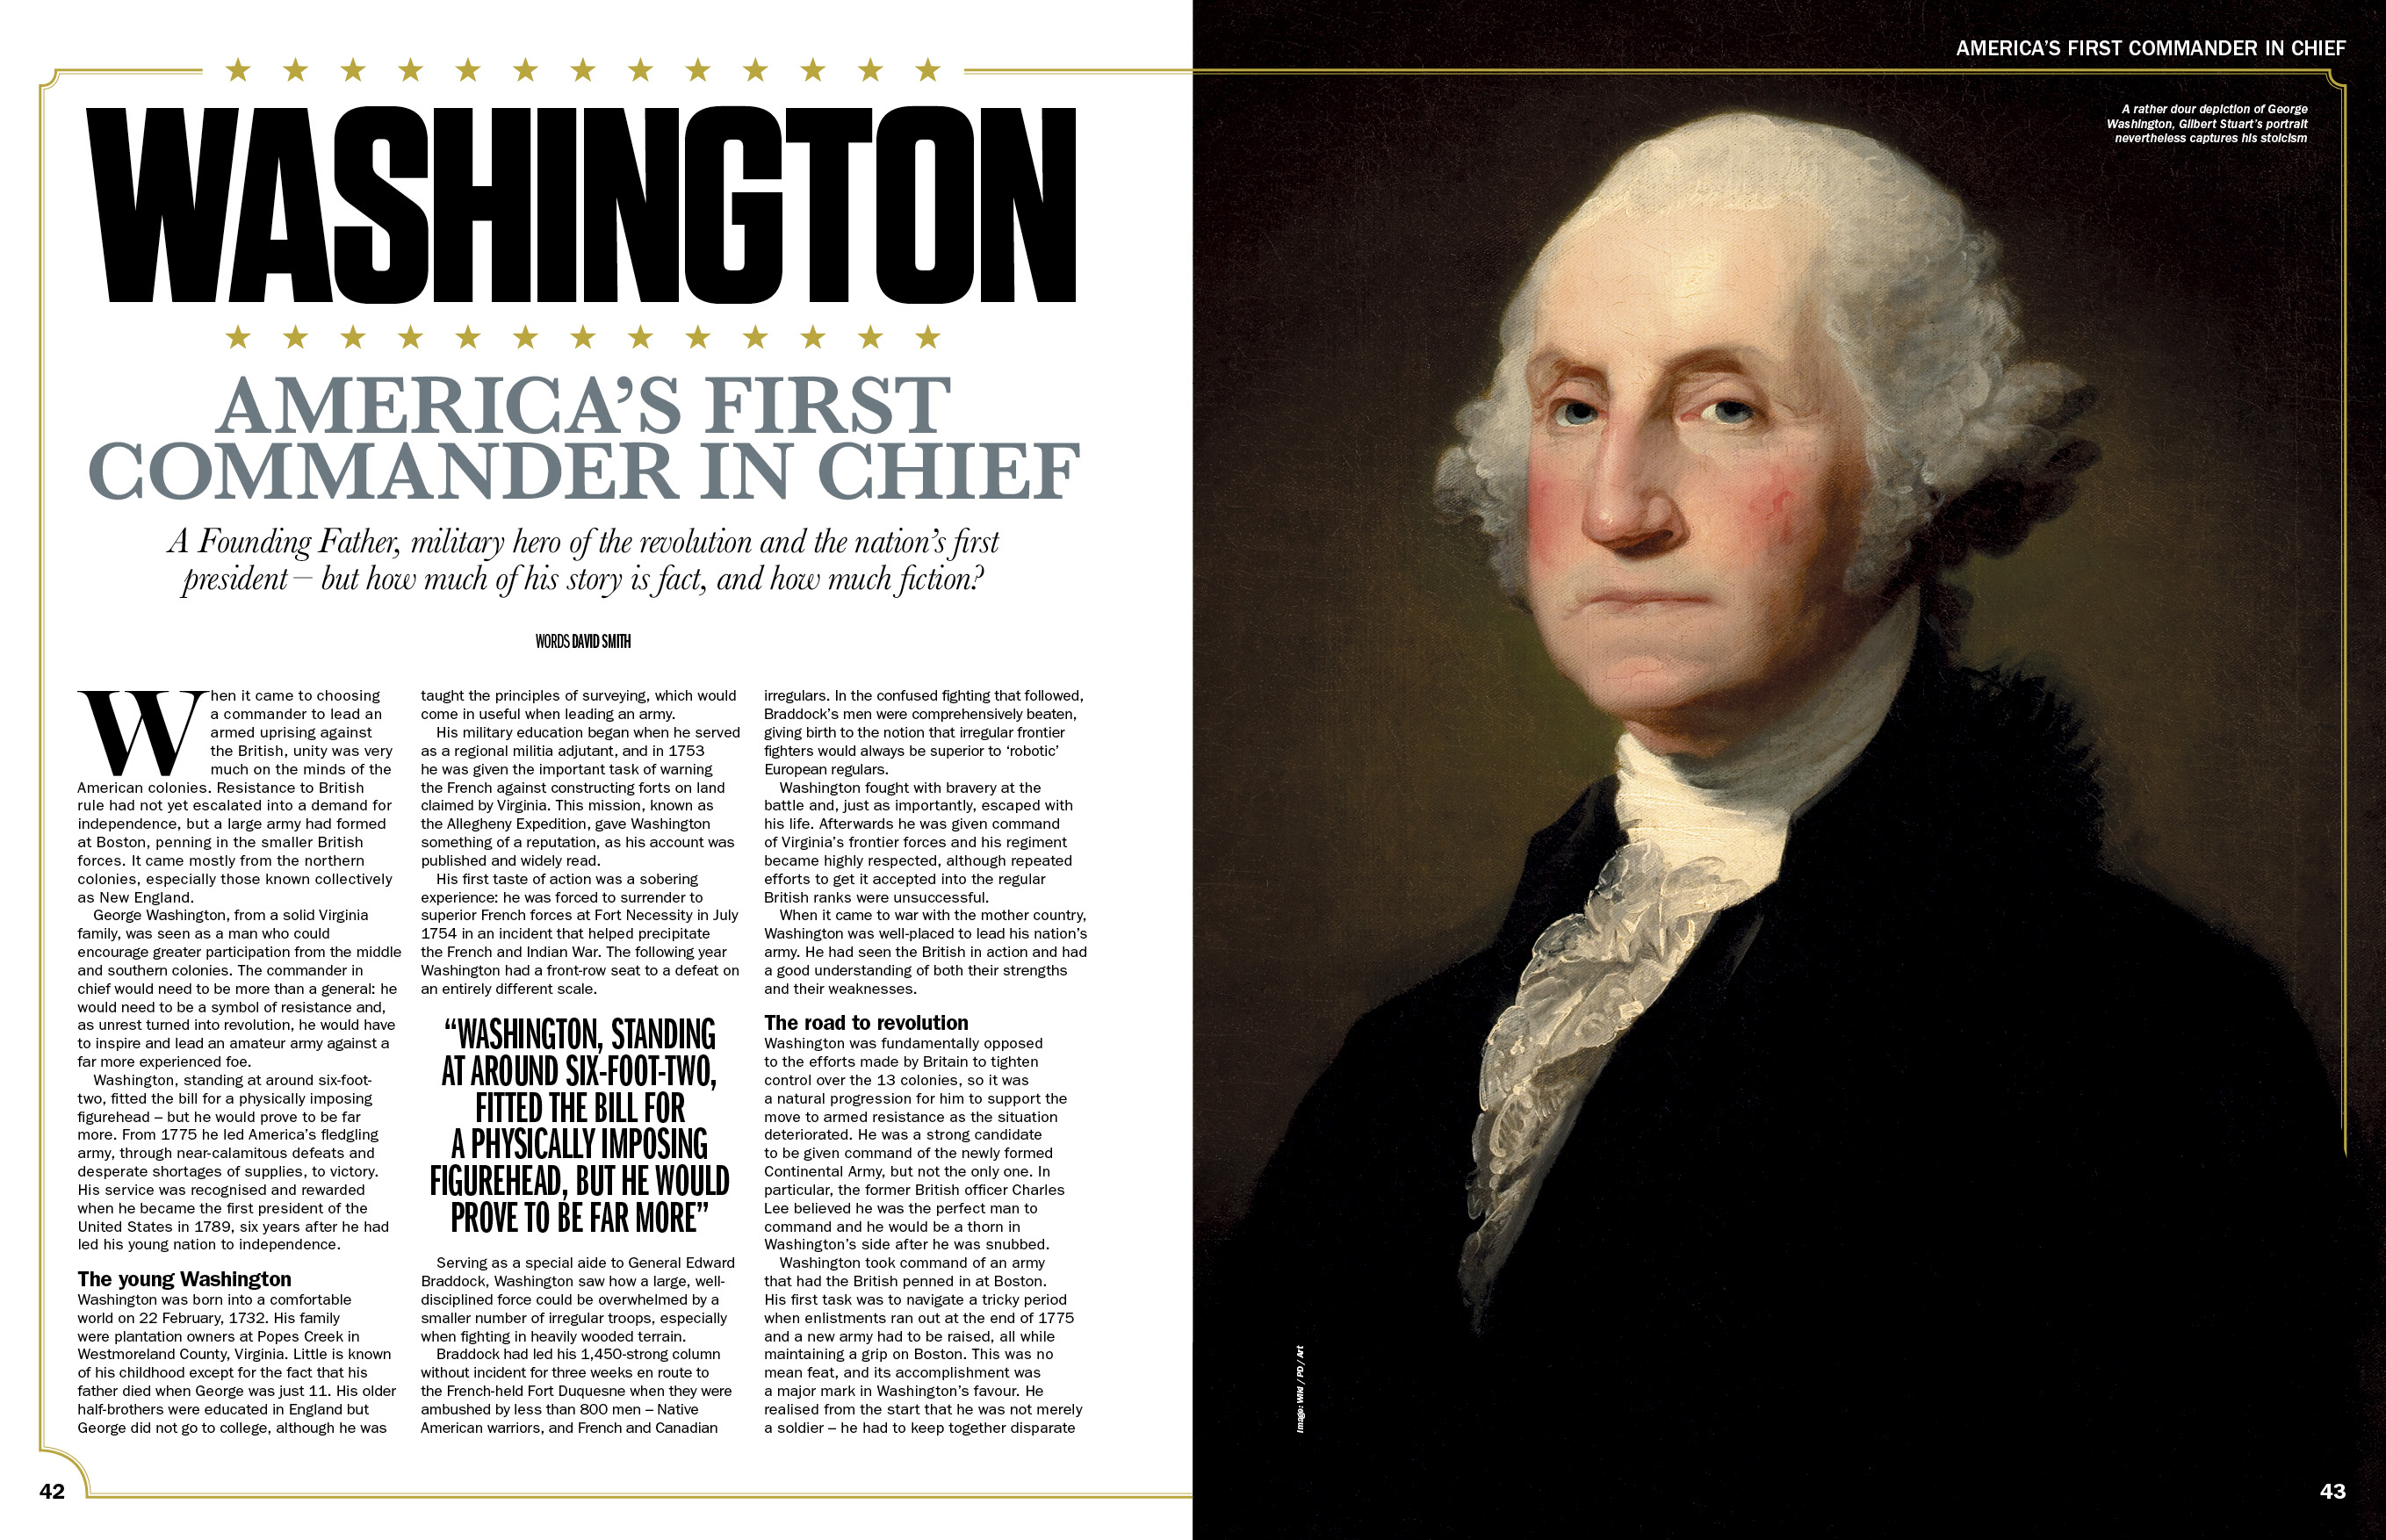 La revista History of War publicó un artículo sobre George Washington